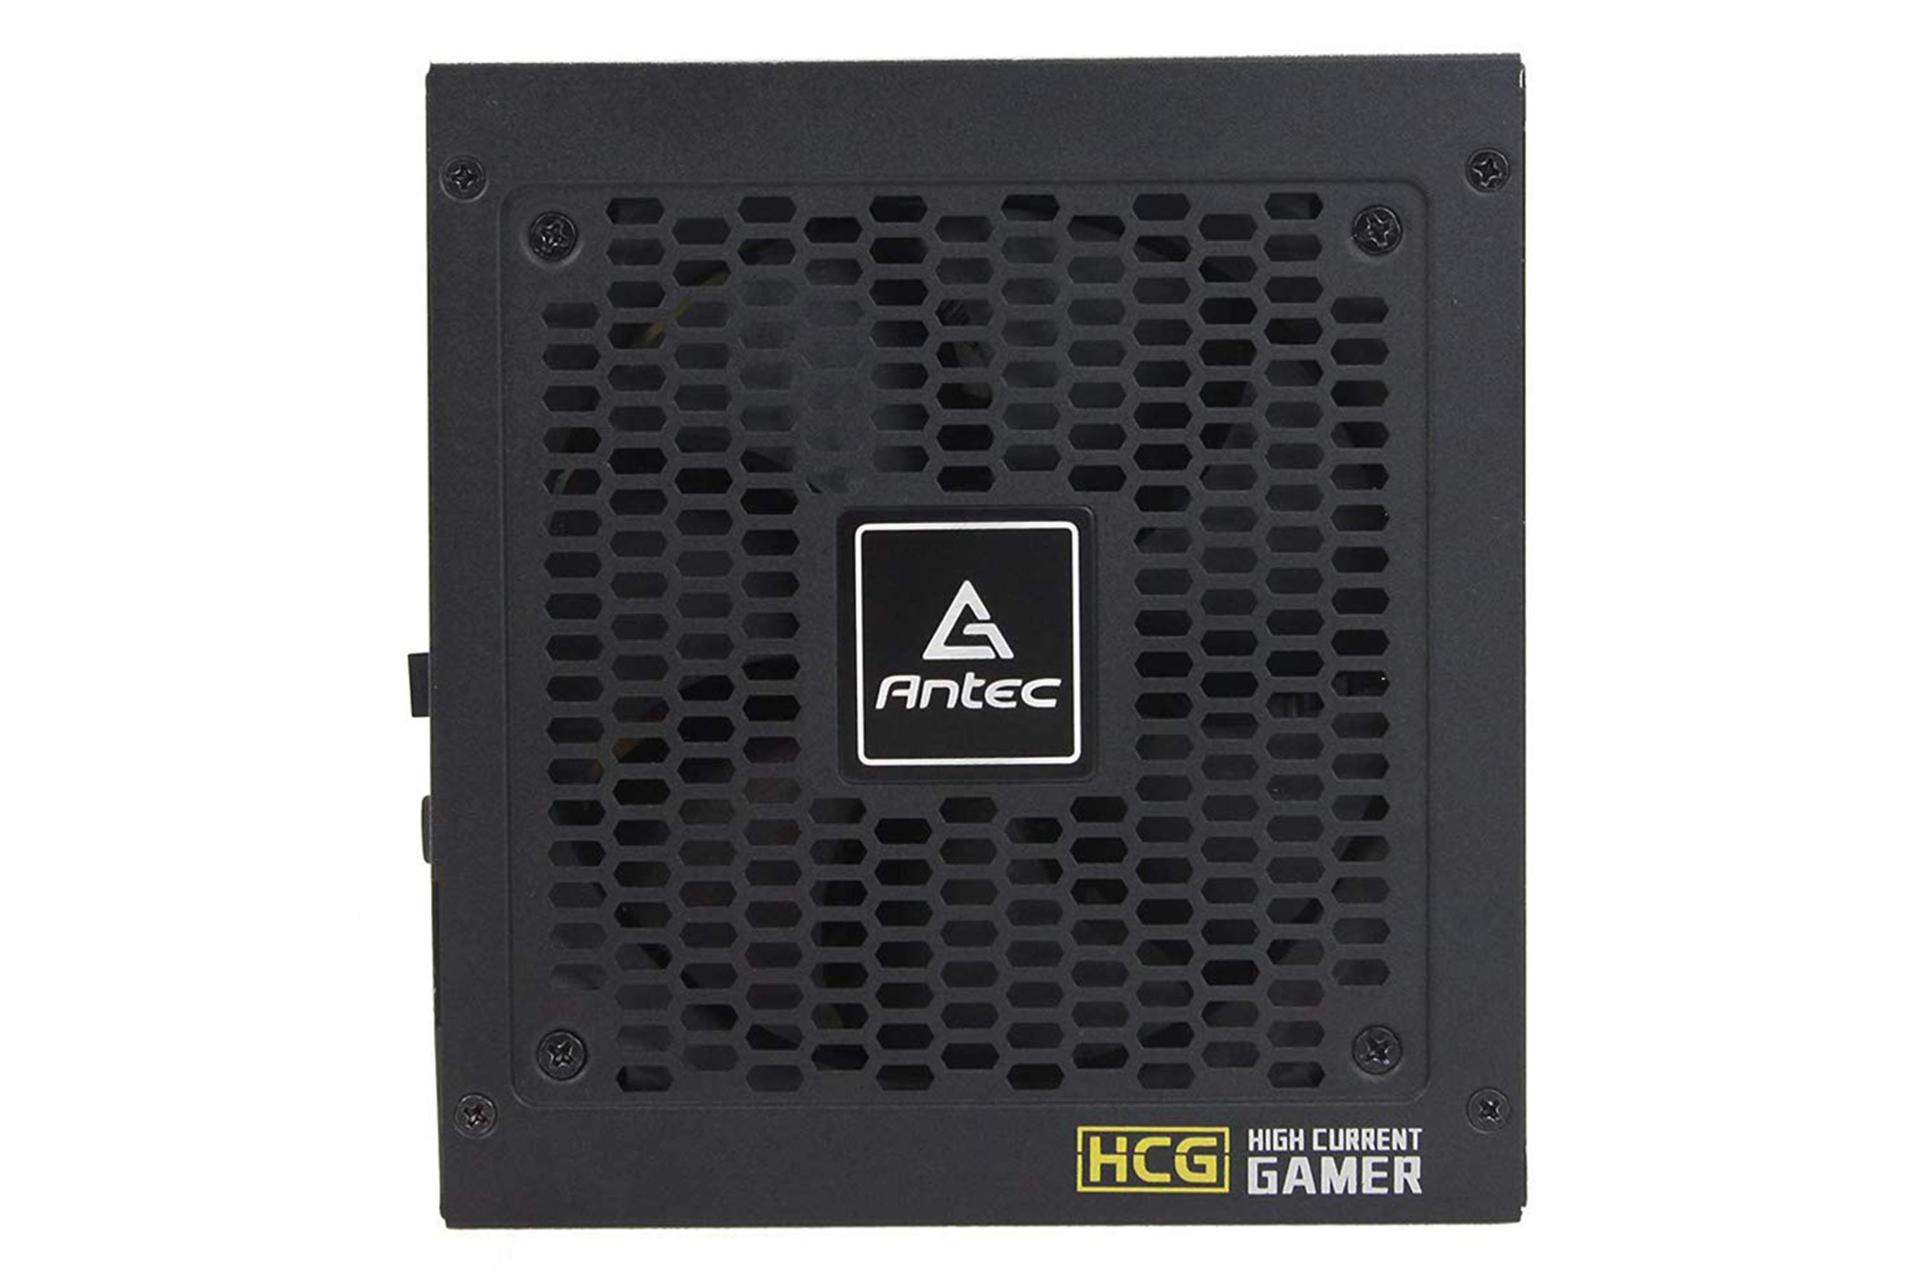 پاور کامپیوتر انتک HCG650 با توان 650 وات نمای فن